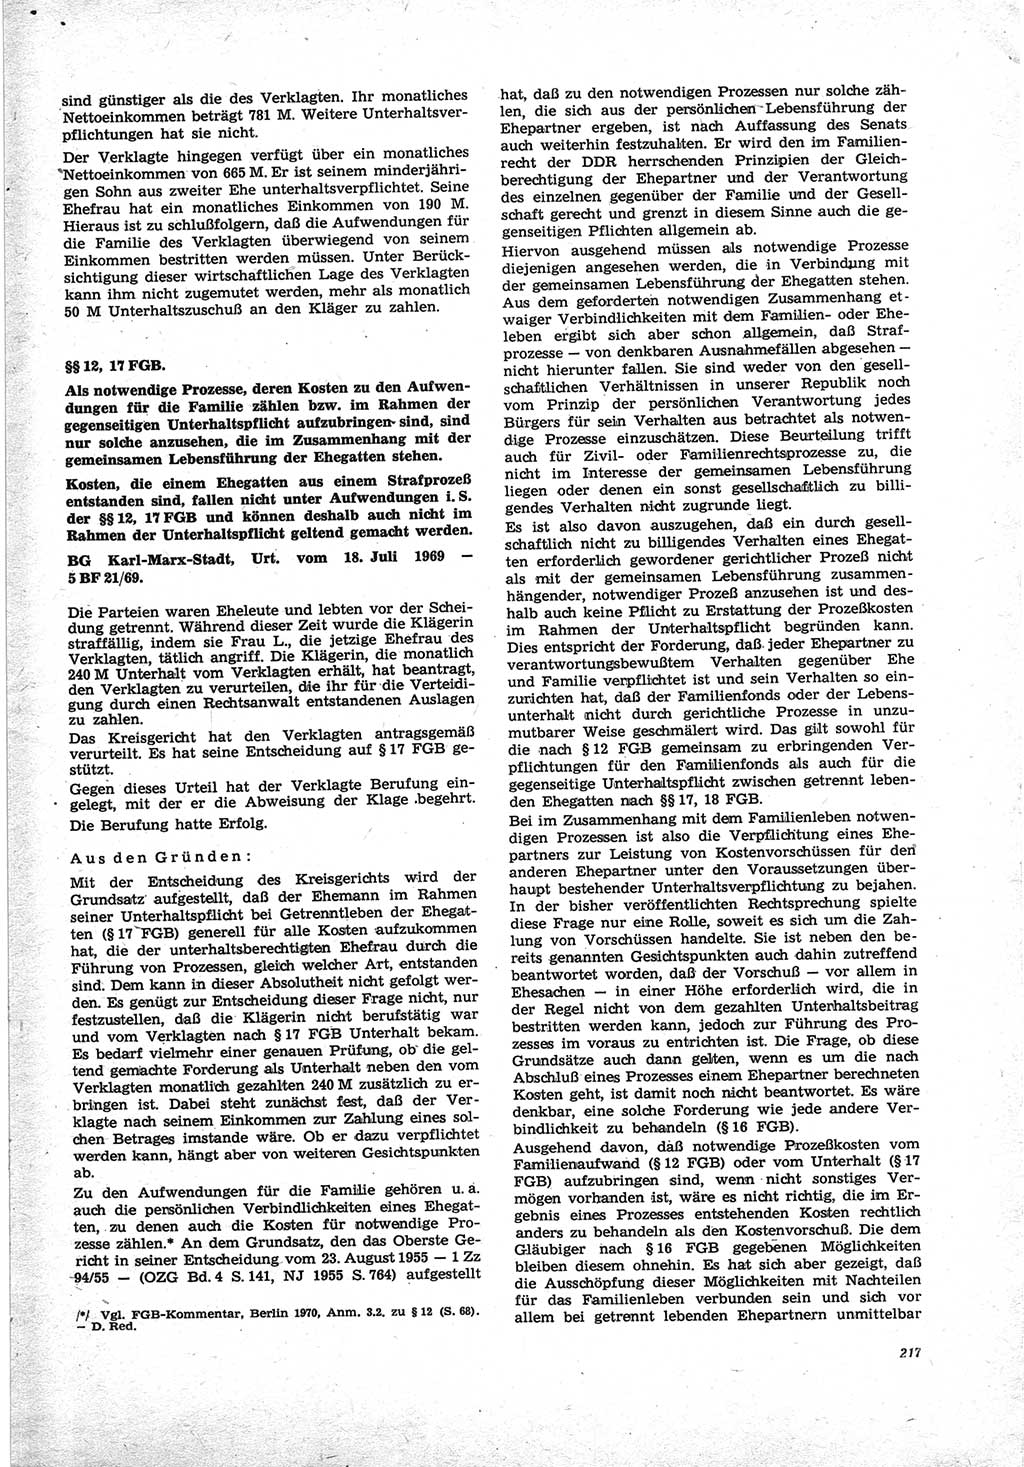 Neue Justiz (NJ), Zeitschrift für Recht und Rechtswissenschaft [Deutsche Demokratische Republik (DDR)], 25. Jahrgang 1971, Seite 217 (NJ DDR 1971, S. 217)